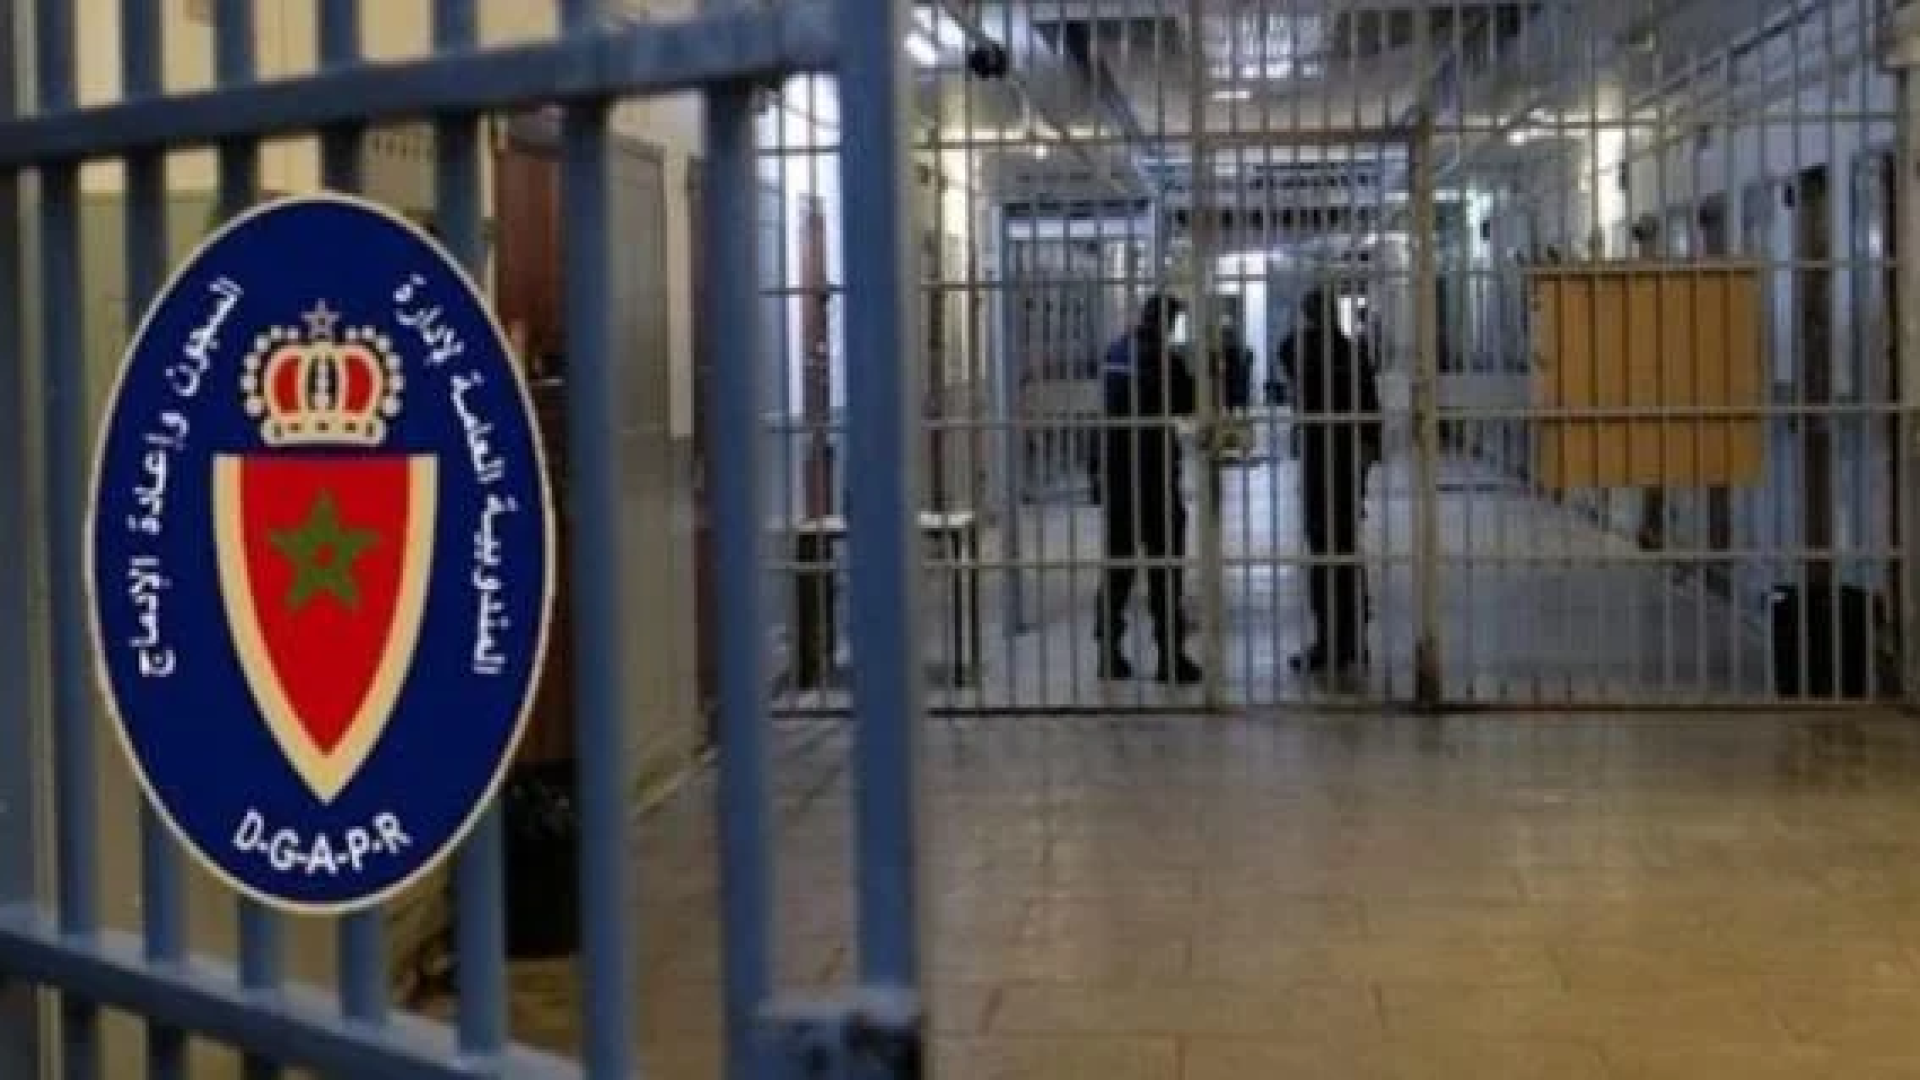 المندوبية العامة لإدارة السجون تقرر إغلاق السجن المحلي بطنجة المعروف ب”سات فيلاج”